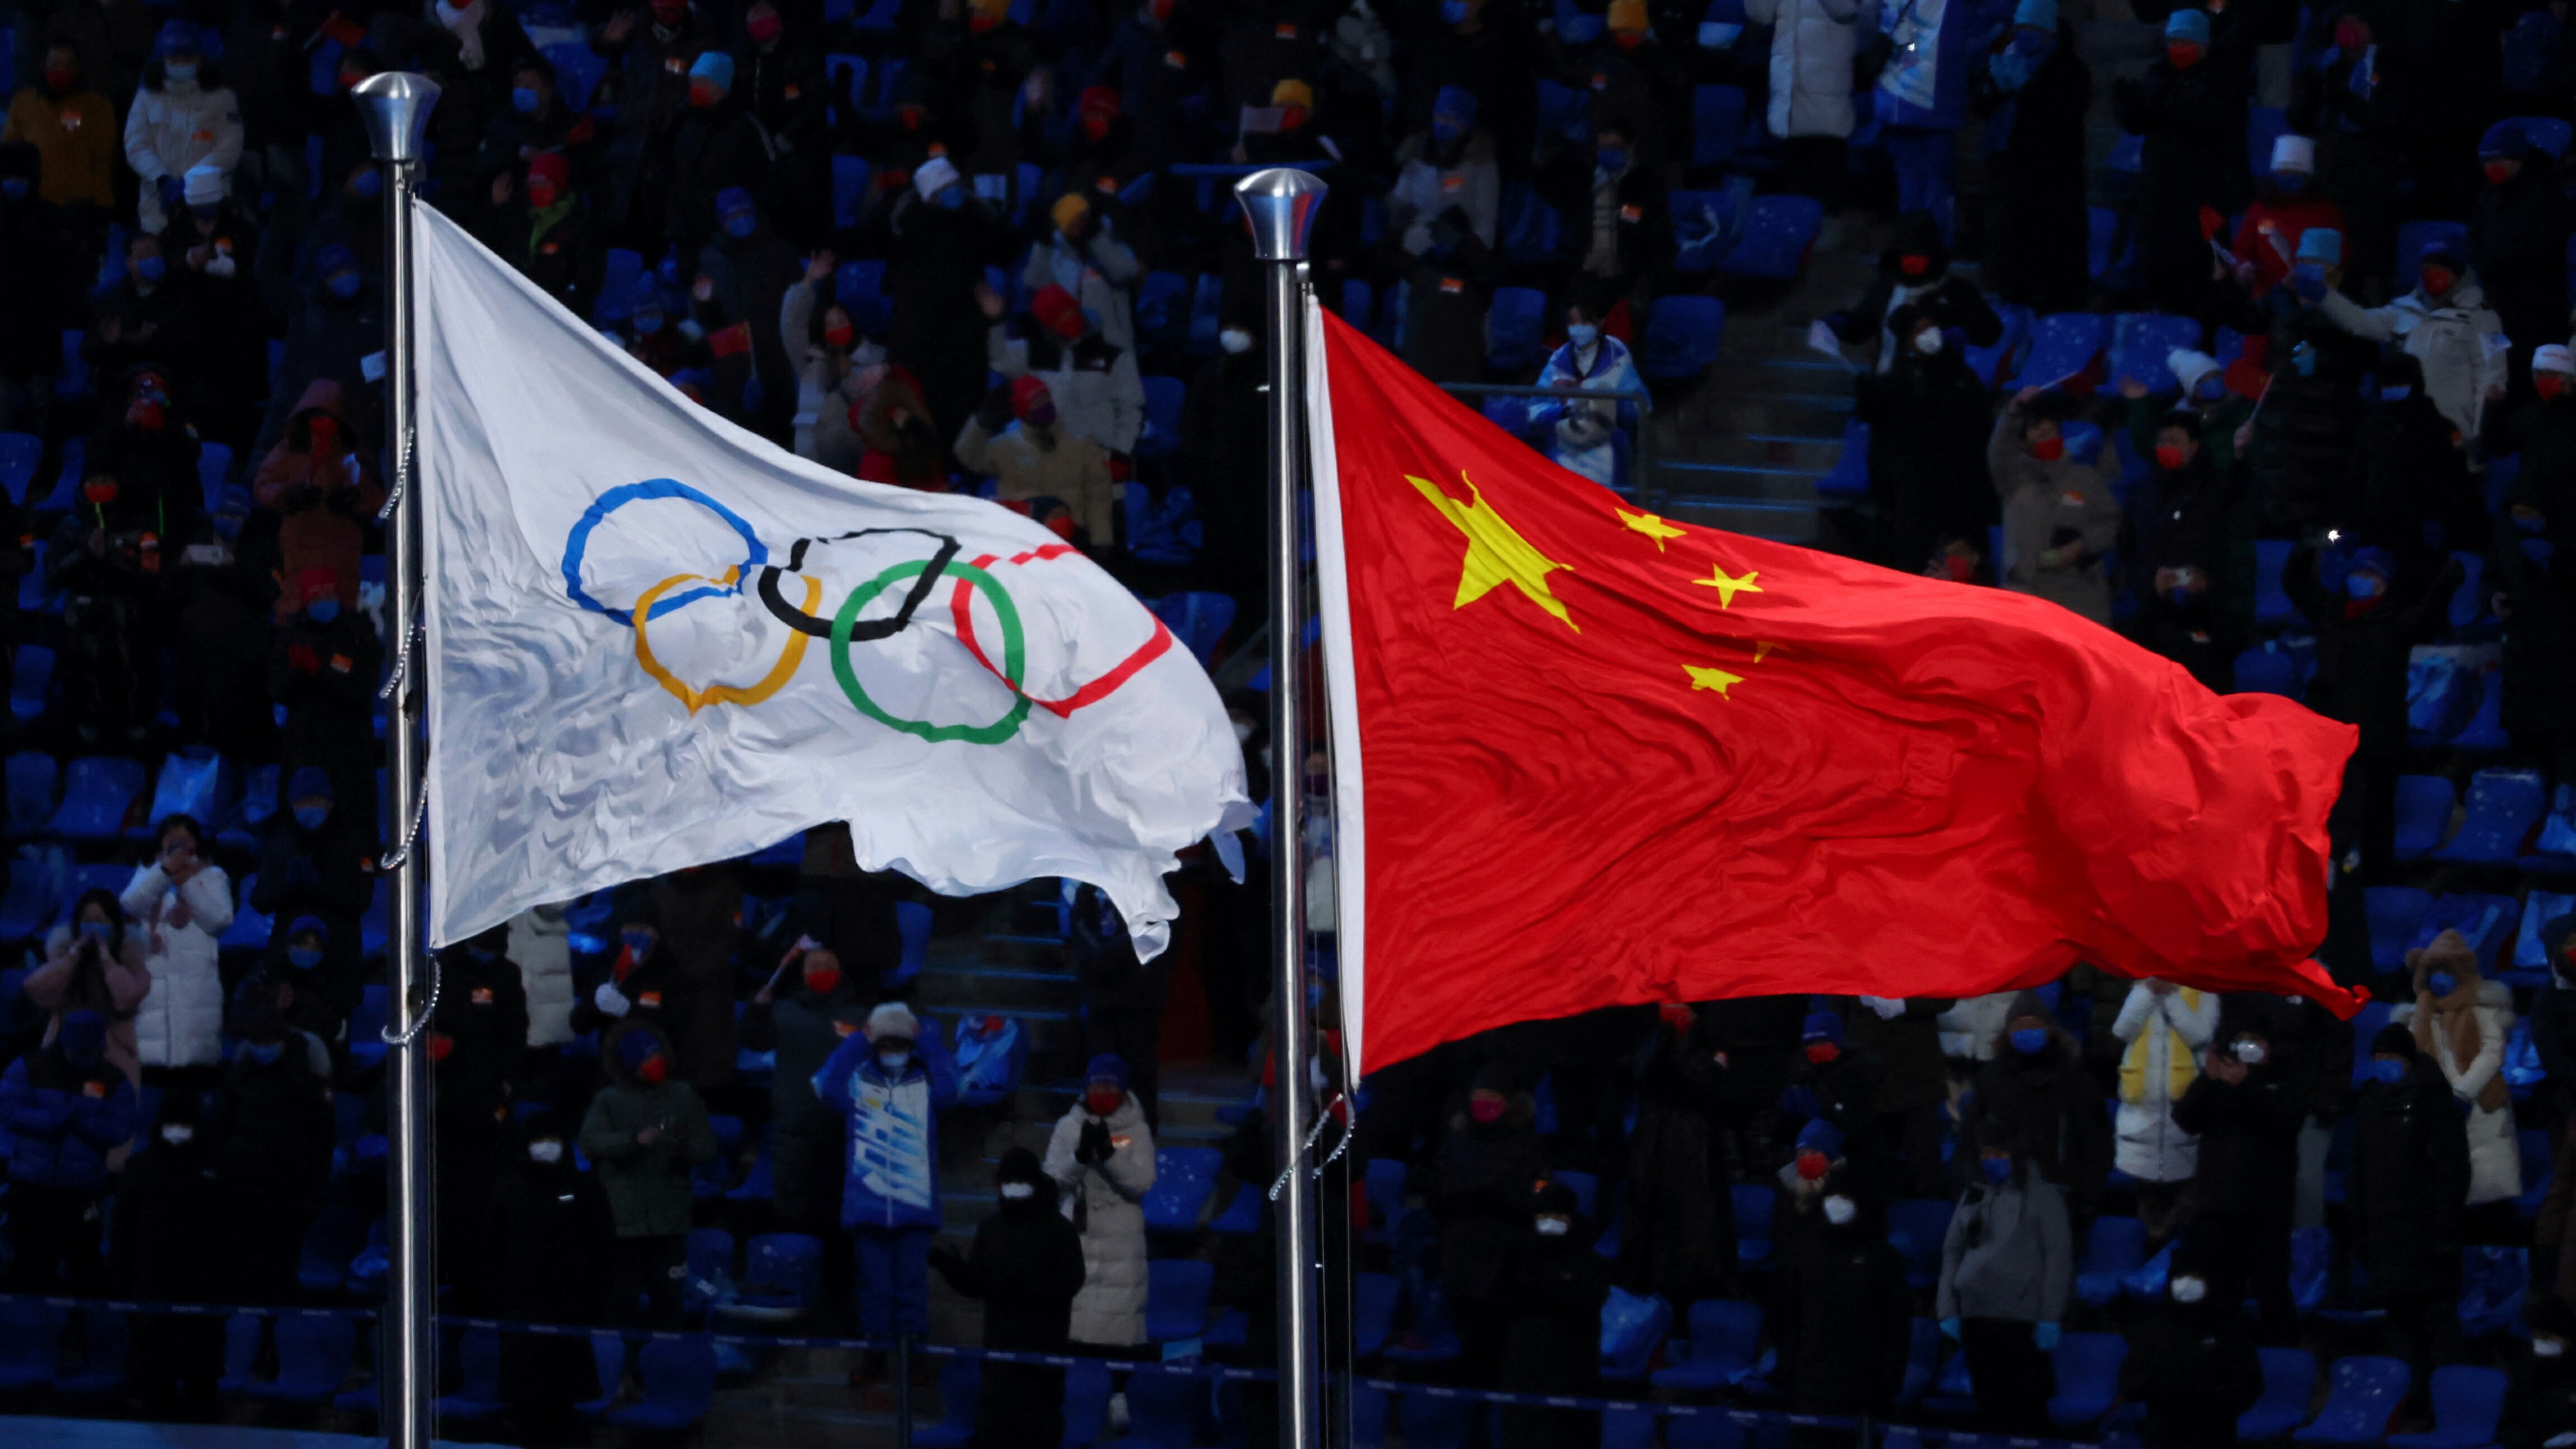 Rövidpályás gyorskorcsolya: nem csitulnak az indulatok, széttépték a kínai zászlót